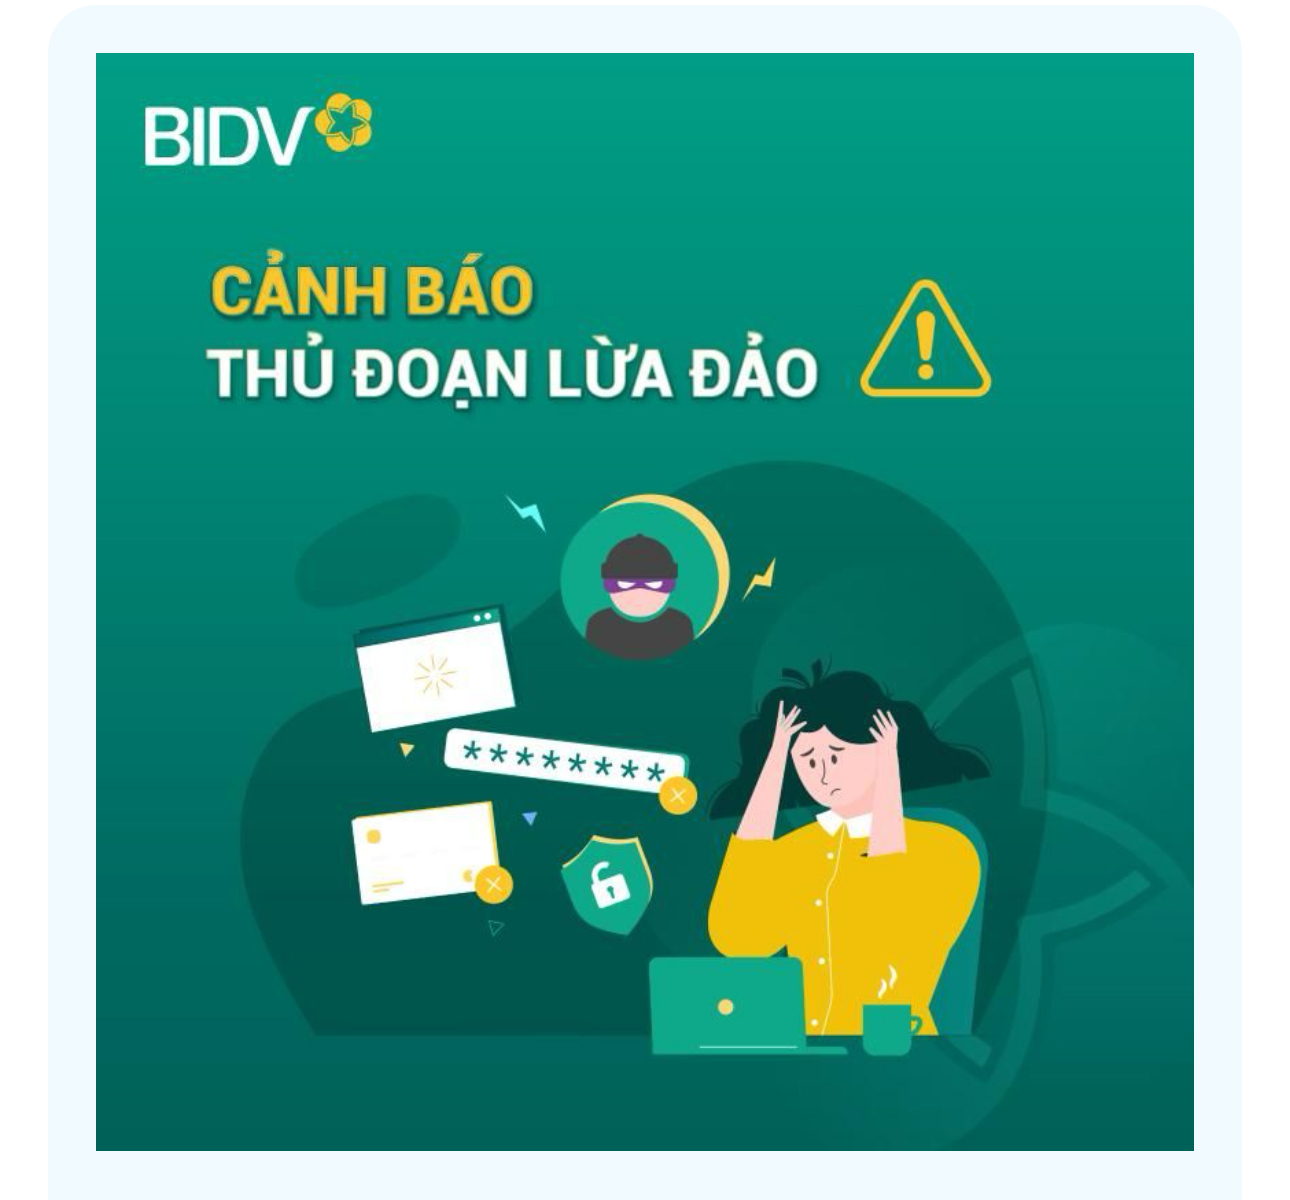 Ngân hàng BIDV cảnh báo thủ đoạn lừa đảo mới, không cẩn thận dễ "mất tiền như chơi"